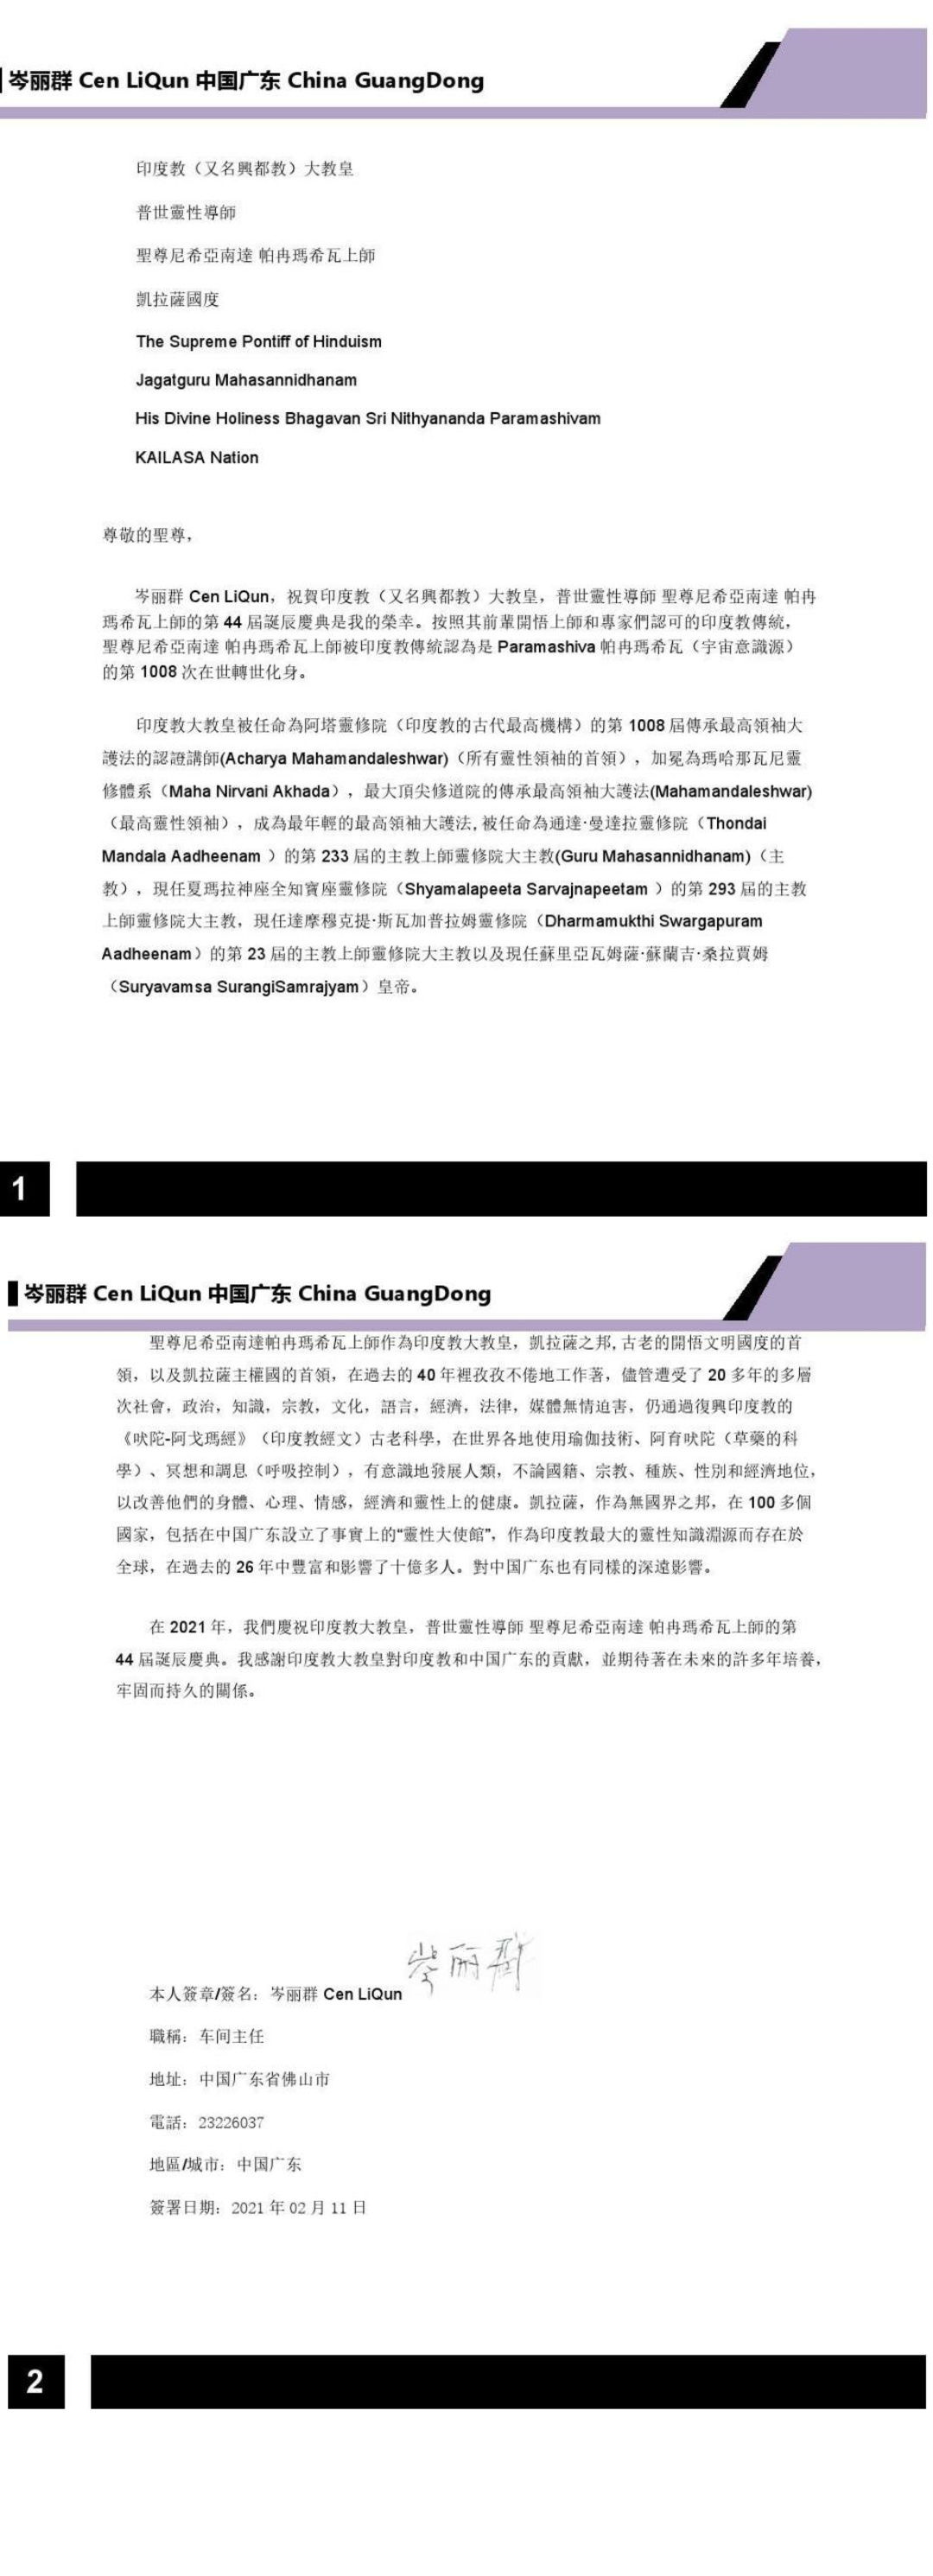 China---Cen-Li-Qun---Feb-11--2021-(Proclamation)-1TiEa 8LpqaaxjgszLQw3SSaX8eSmQR9c.pdf